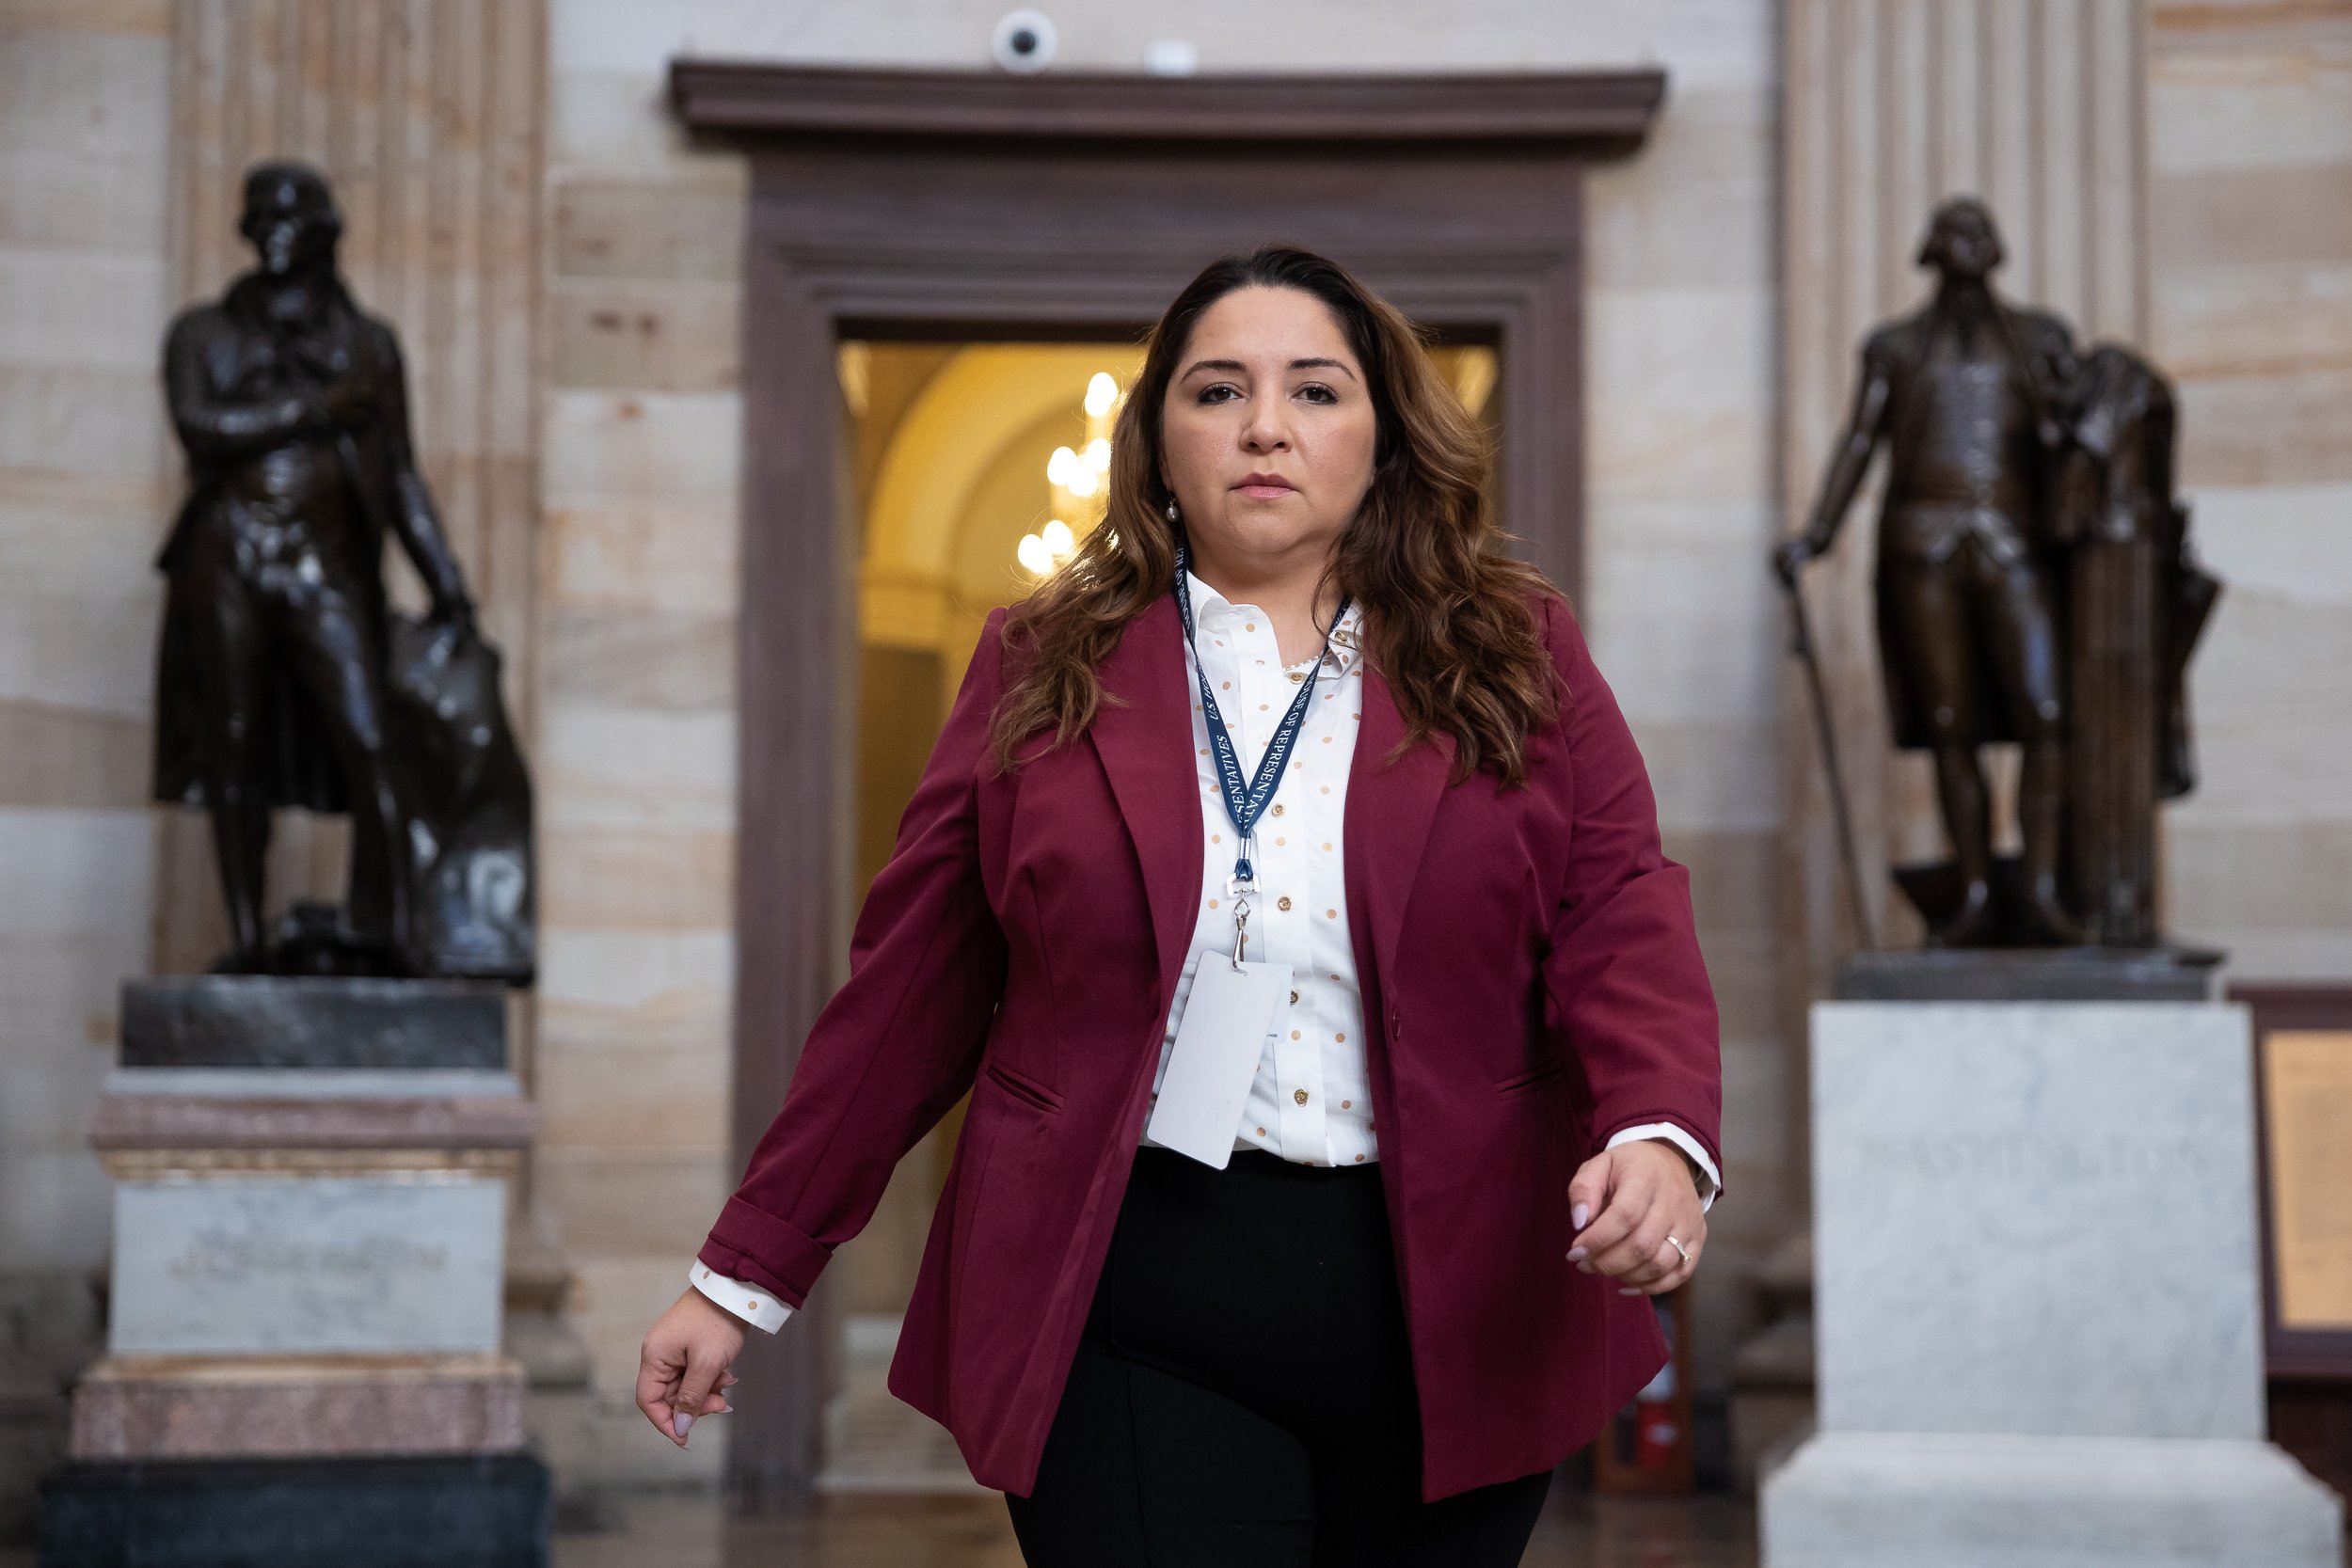  Representative-elect Delia Ramirez (D-Ill.) is seen at the U.S. Capitol Nov. 18, 2022. 